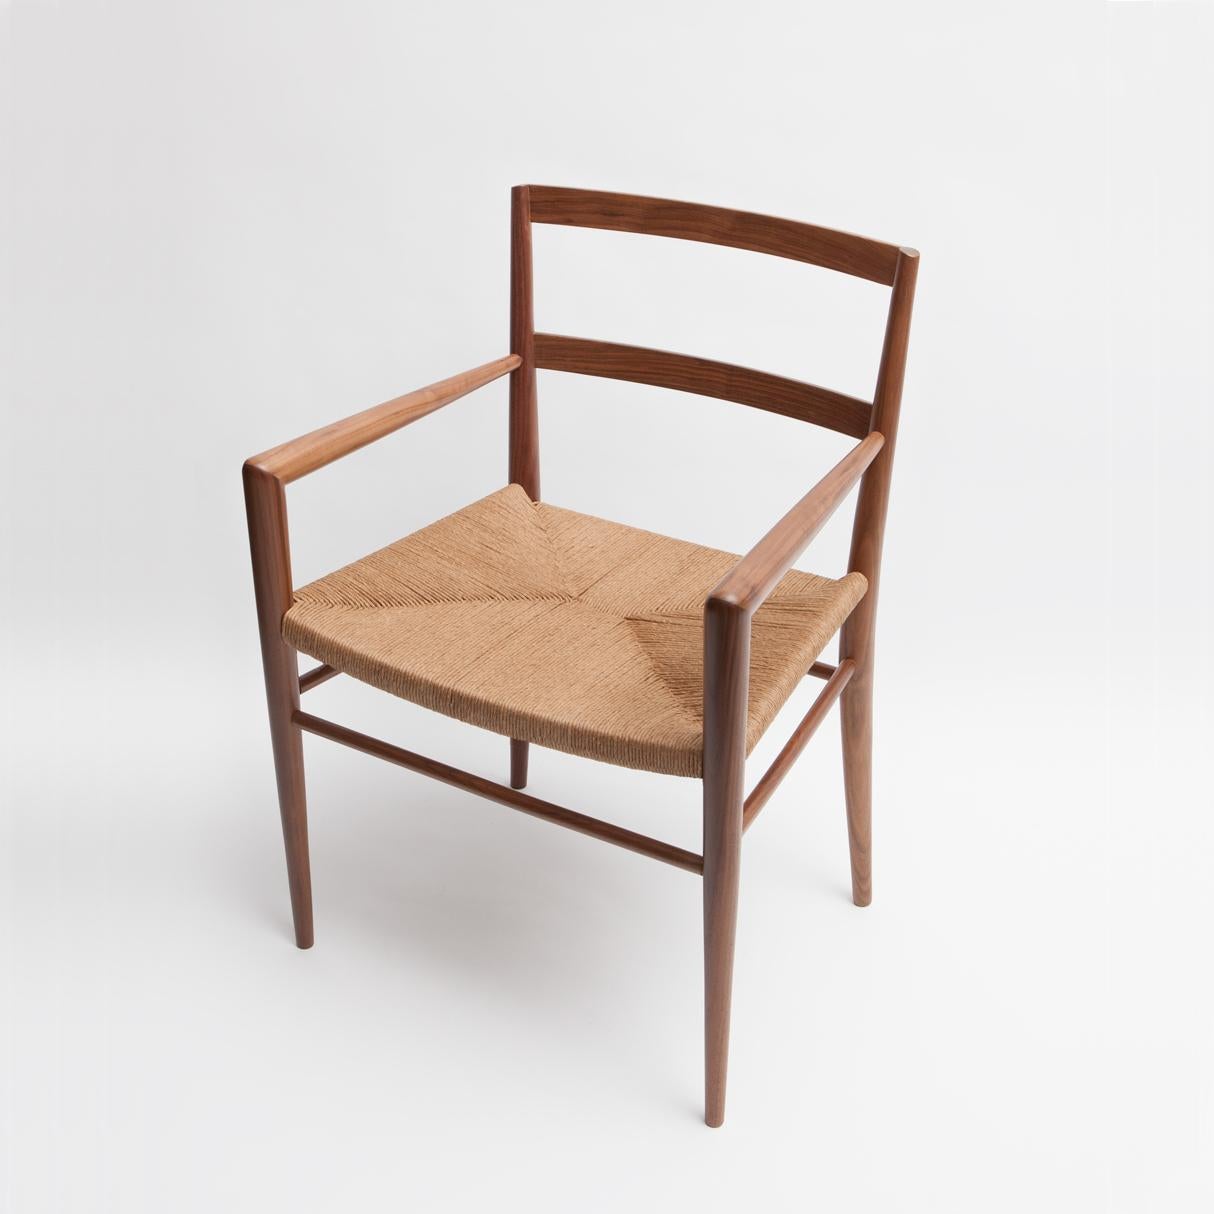 Conçu à l'origine par Mel Smilow en 1956 et officiellement réintroduit par sa fille Judy Smilow en 2013, le fauteuil de salle à manger en jonc tressé est classiquement du milieu du siècle. L'assise tissée à la main et le cadre en bois artisanal de